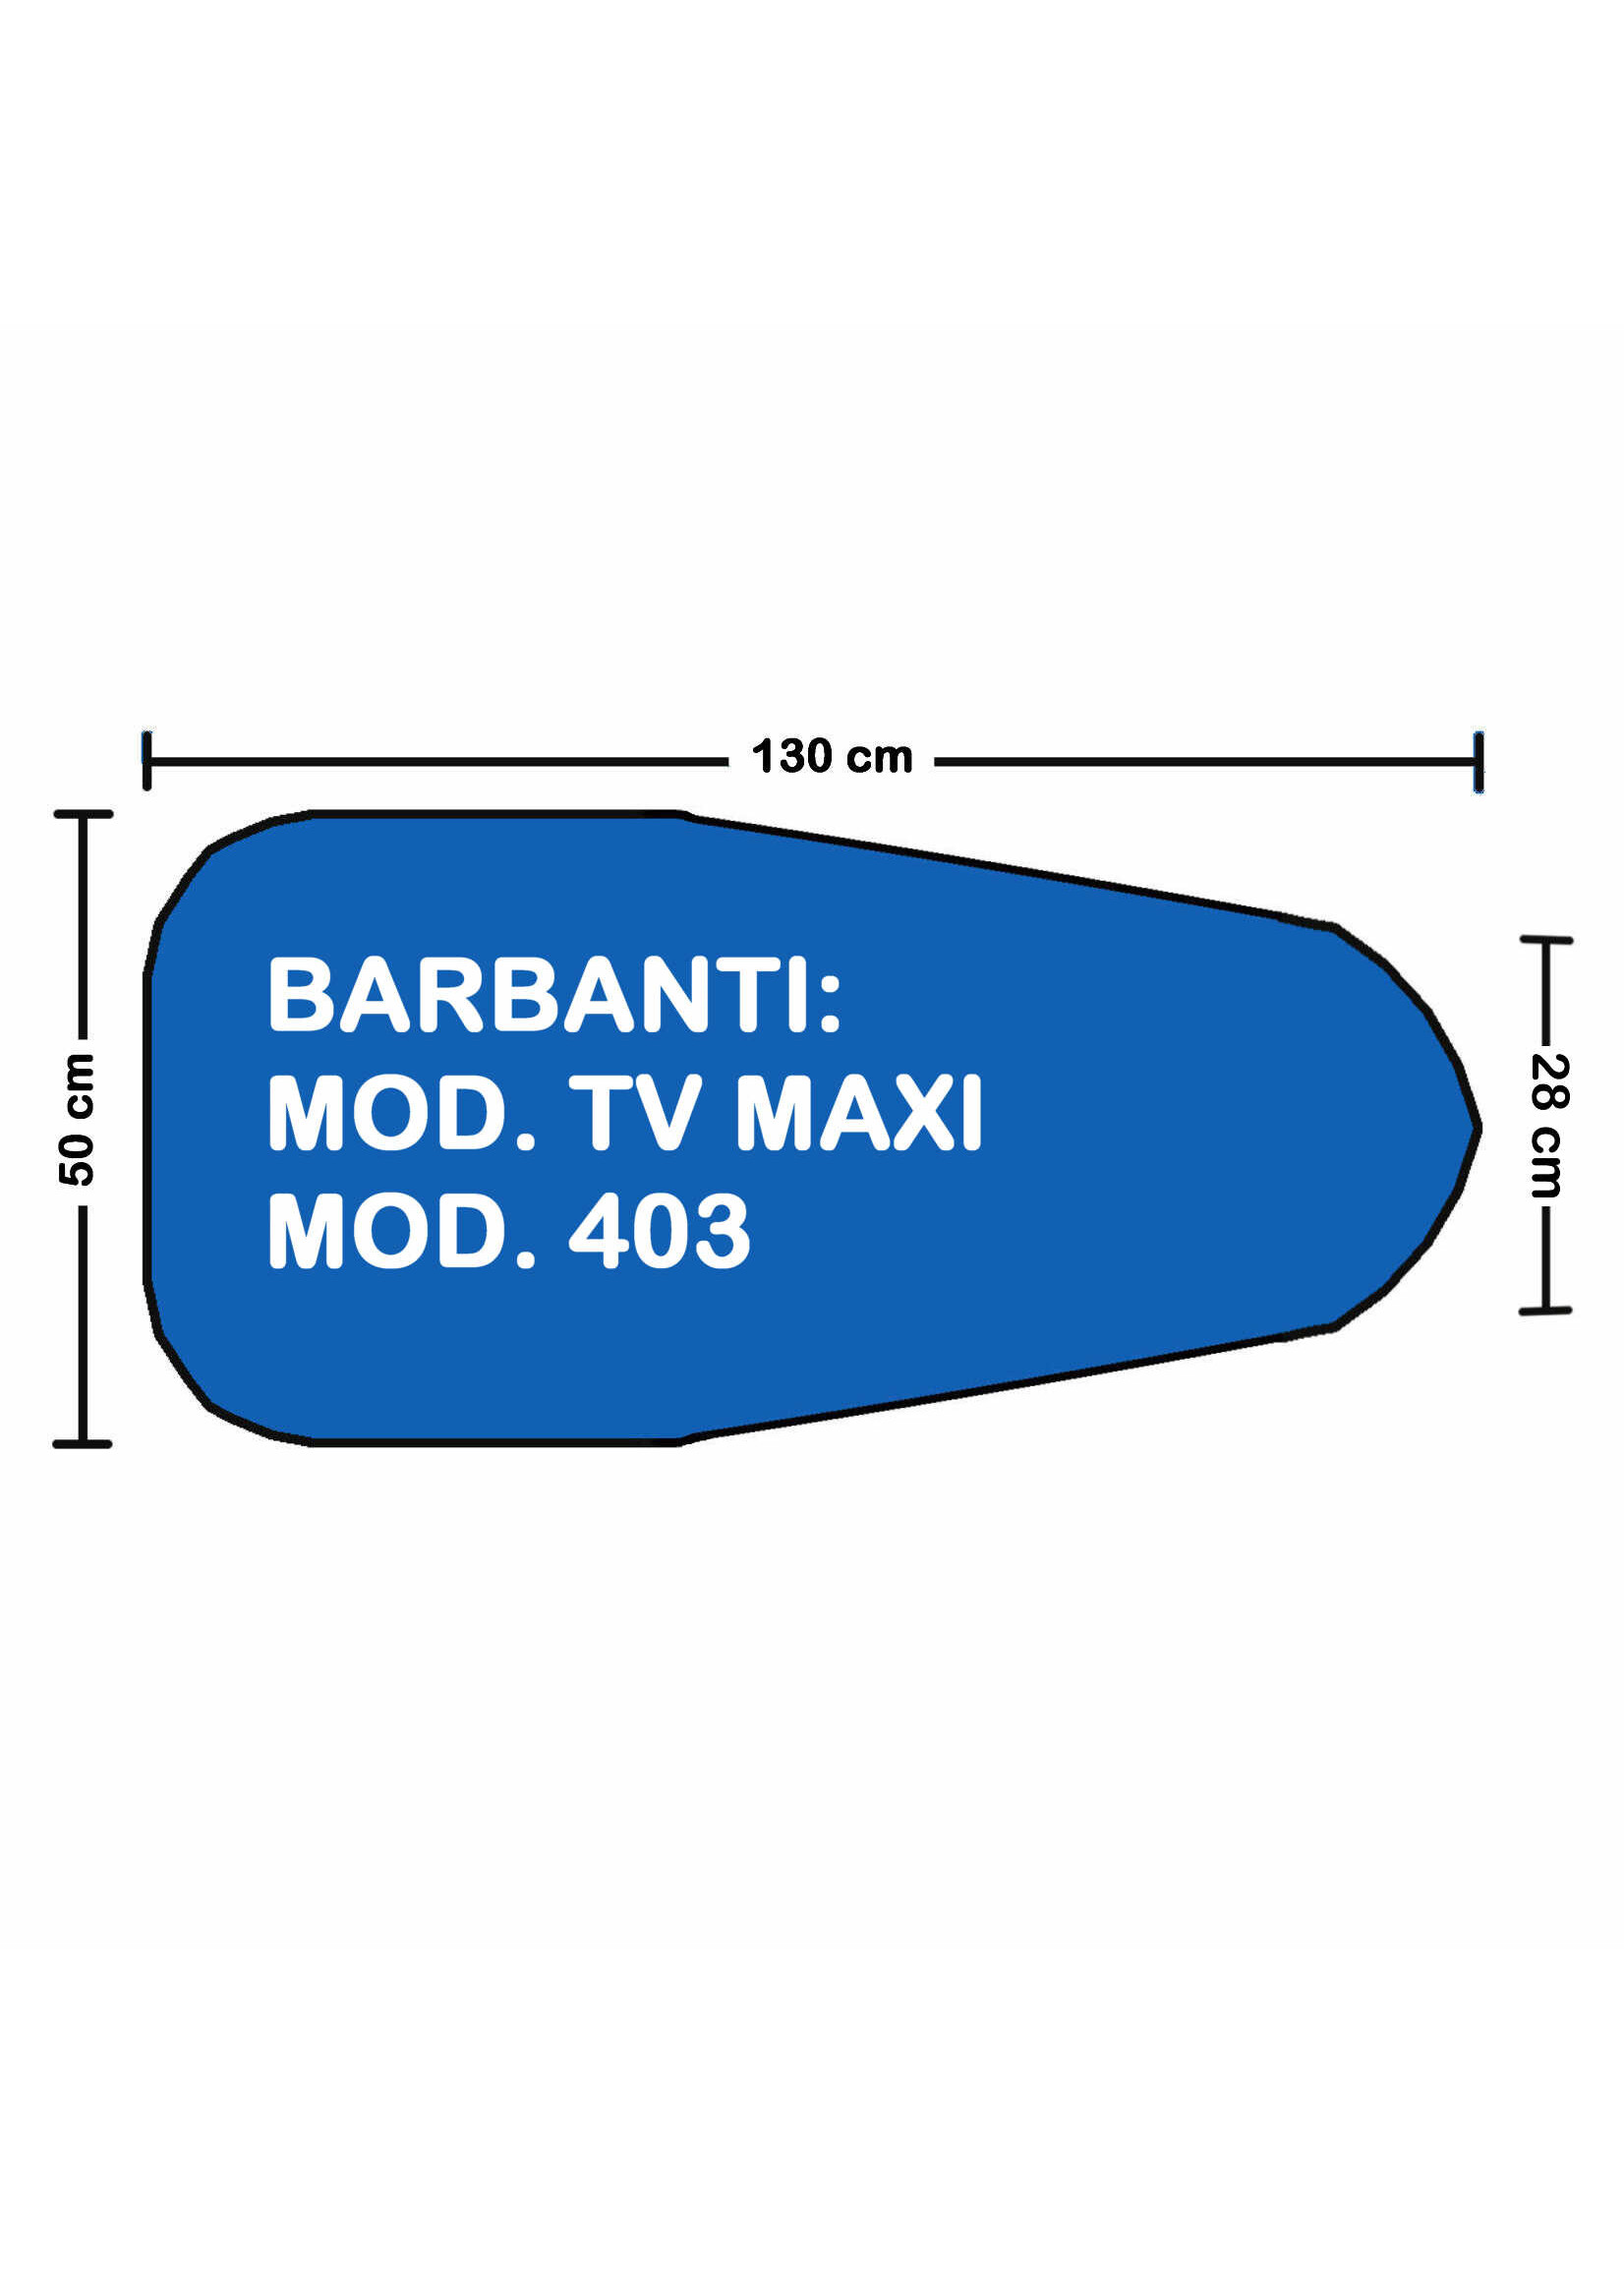 Solana over for BARBANTI MOD.403 / MOD. TV MAXI